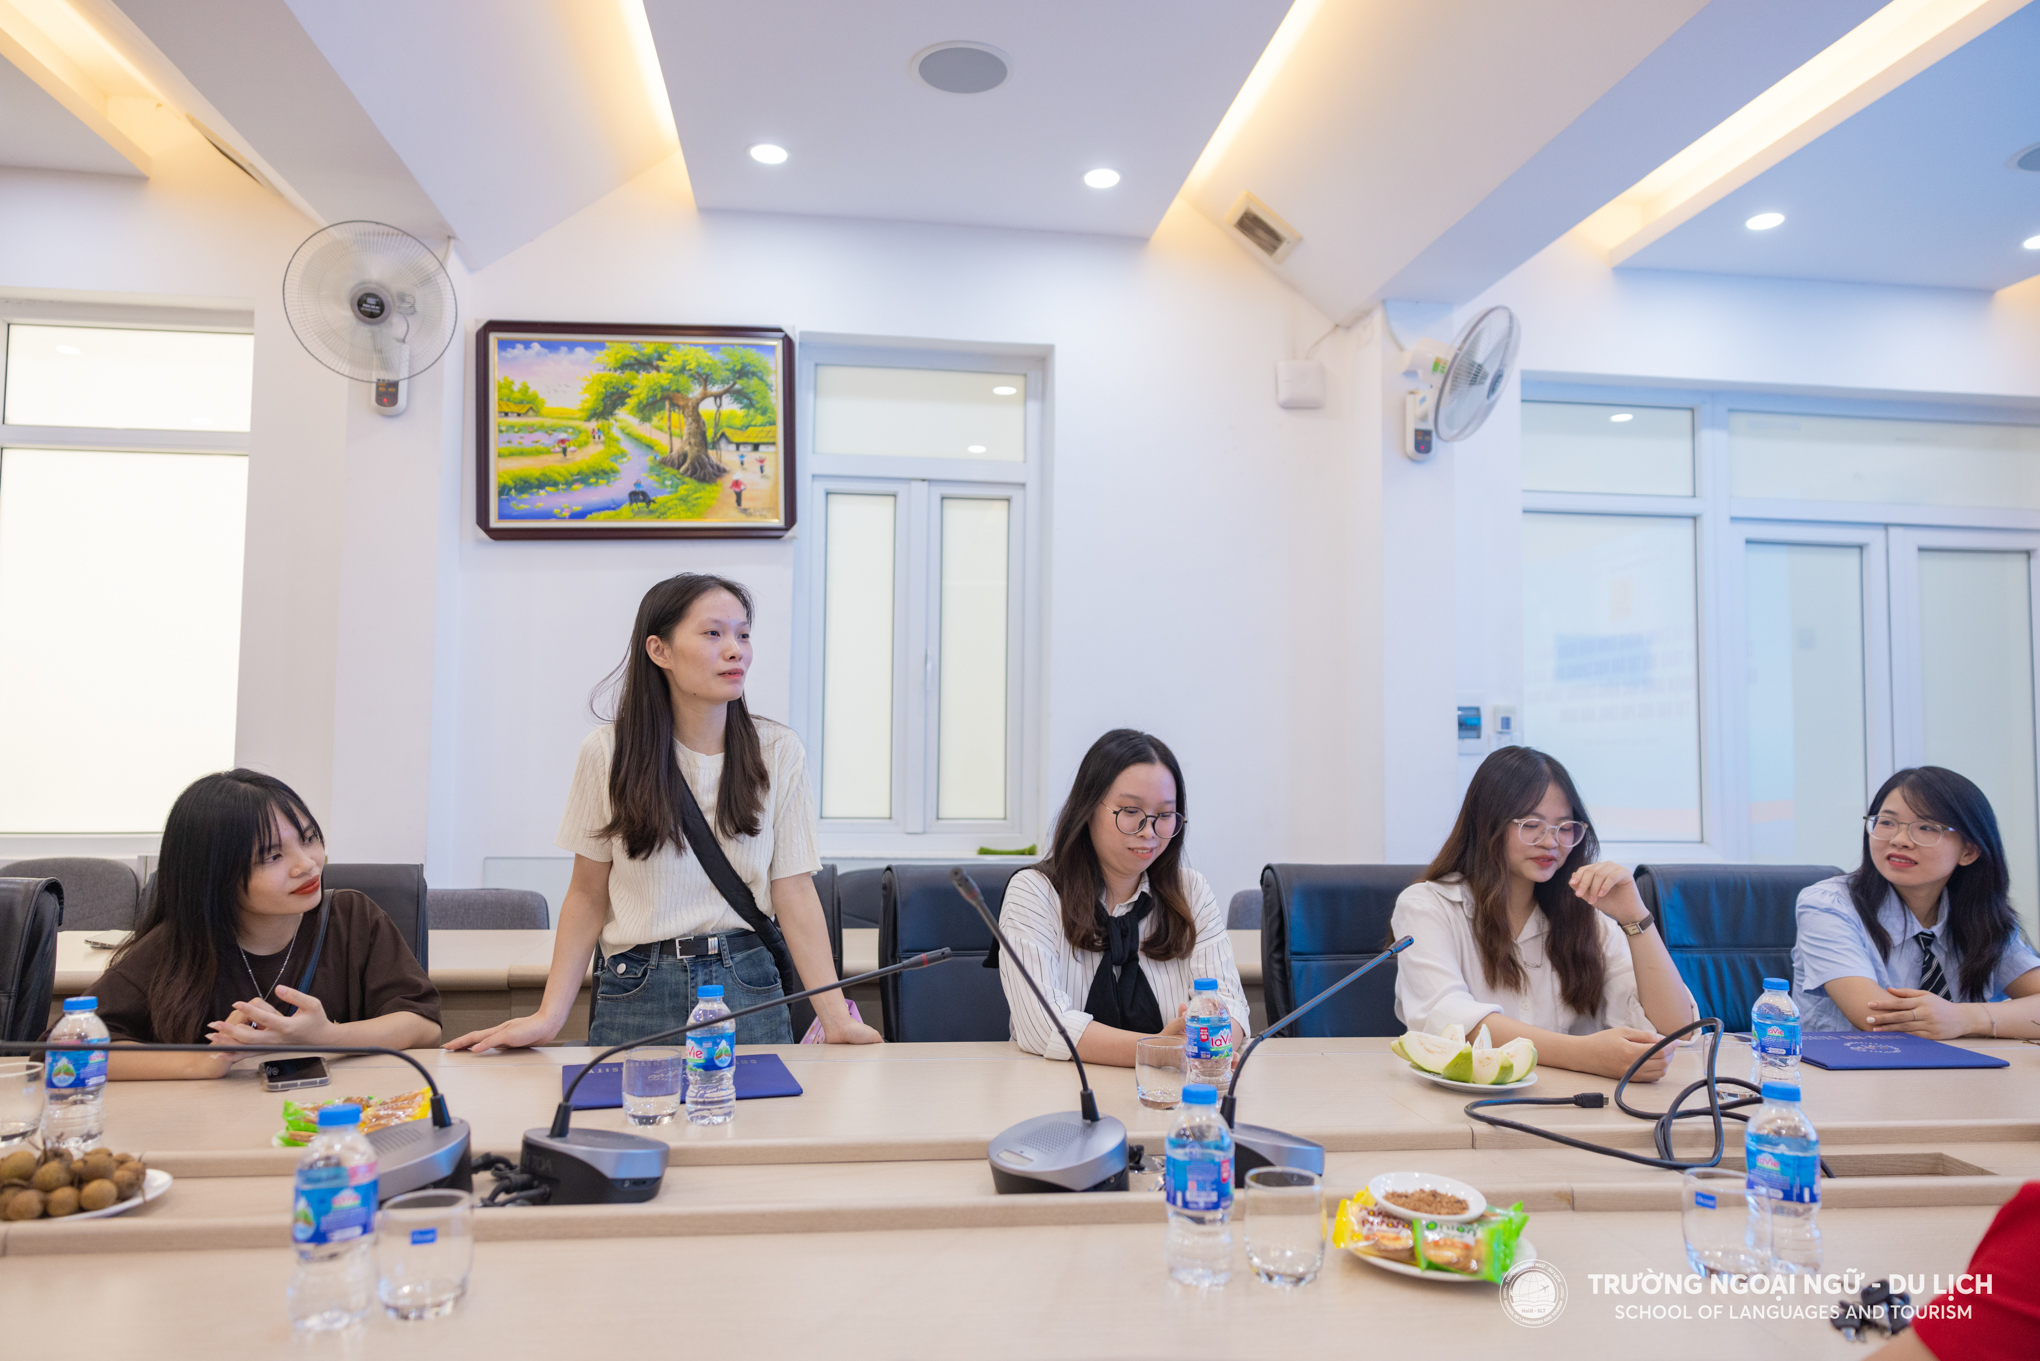 Chào mừng sinh viên trao đổi Đai học Chung Ang và Đại học Pai Chai hoàn thành chương trình học trao đổi